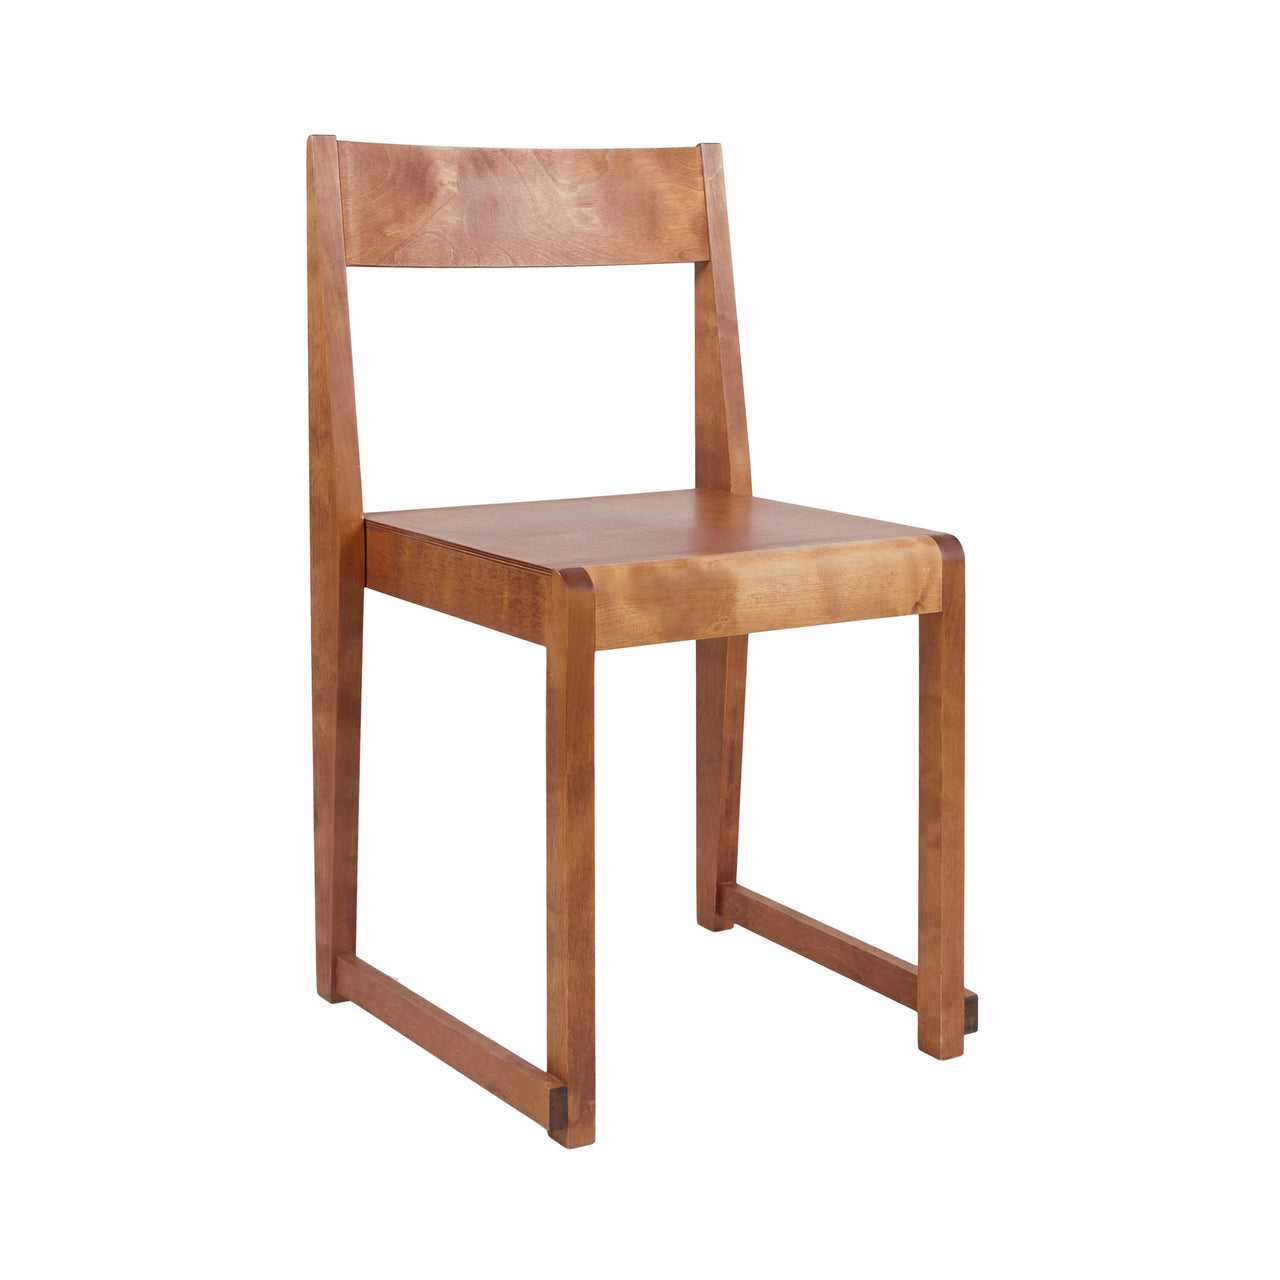 01 Chair: Warm Brown Birch